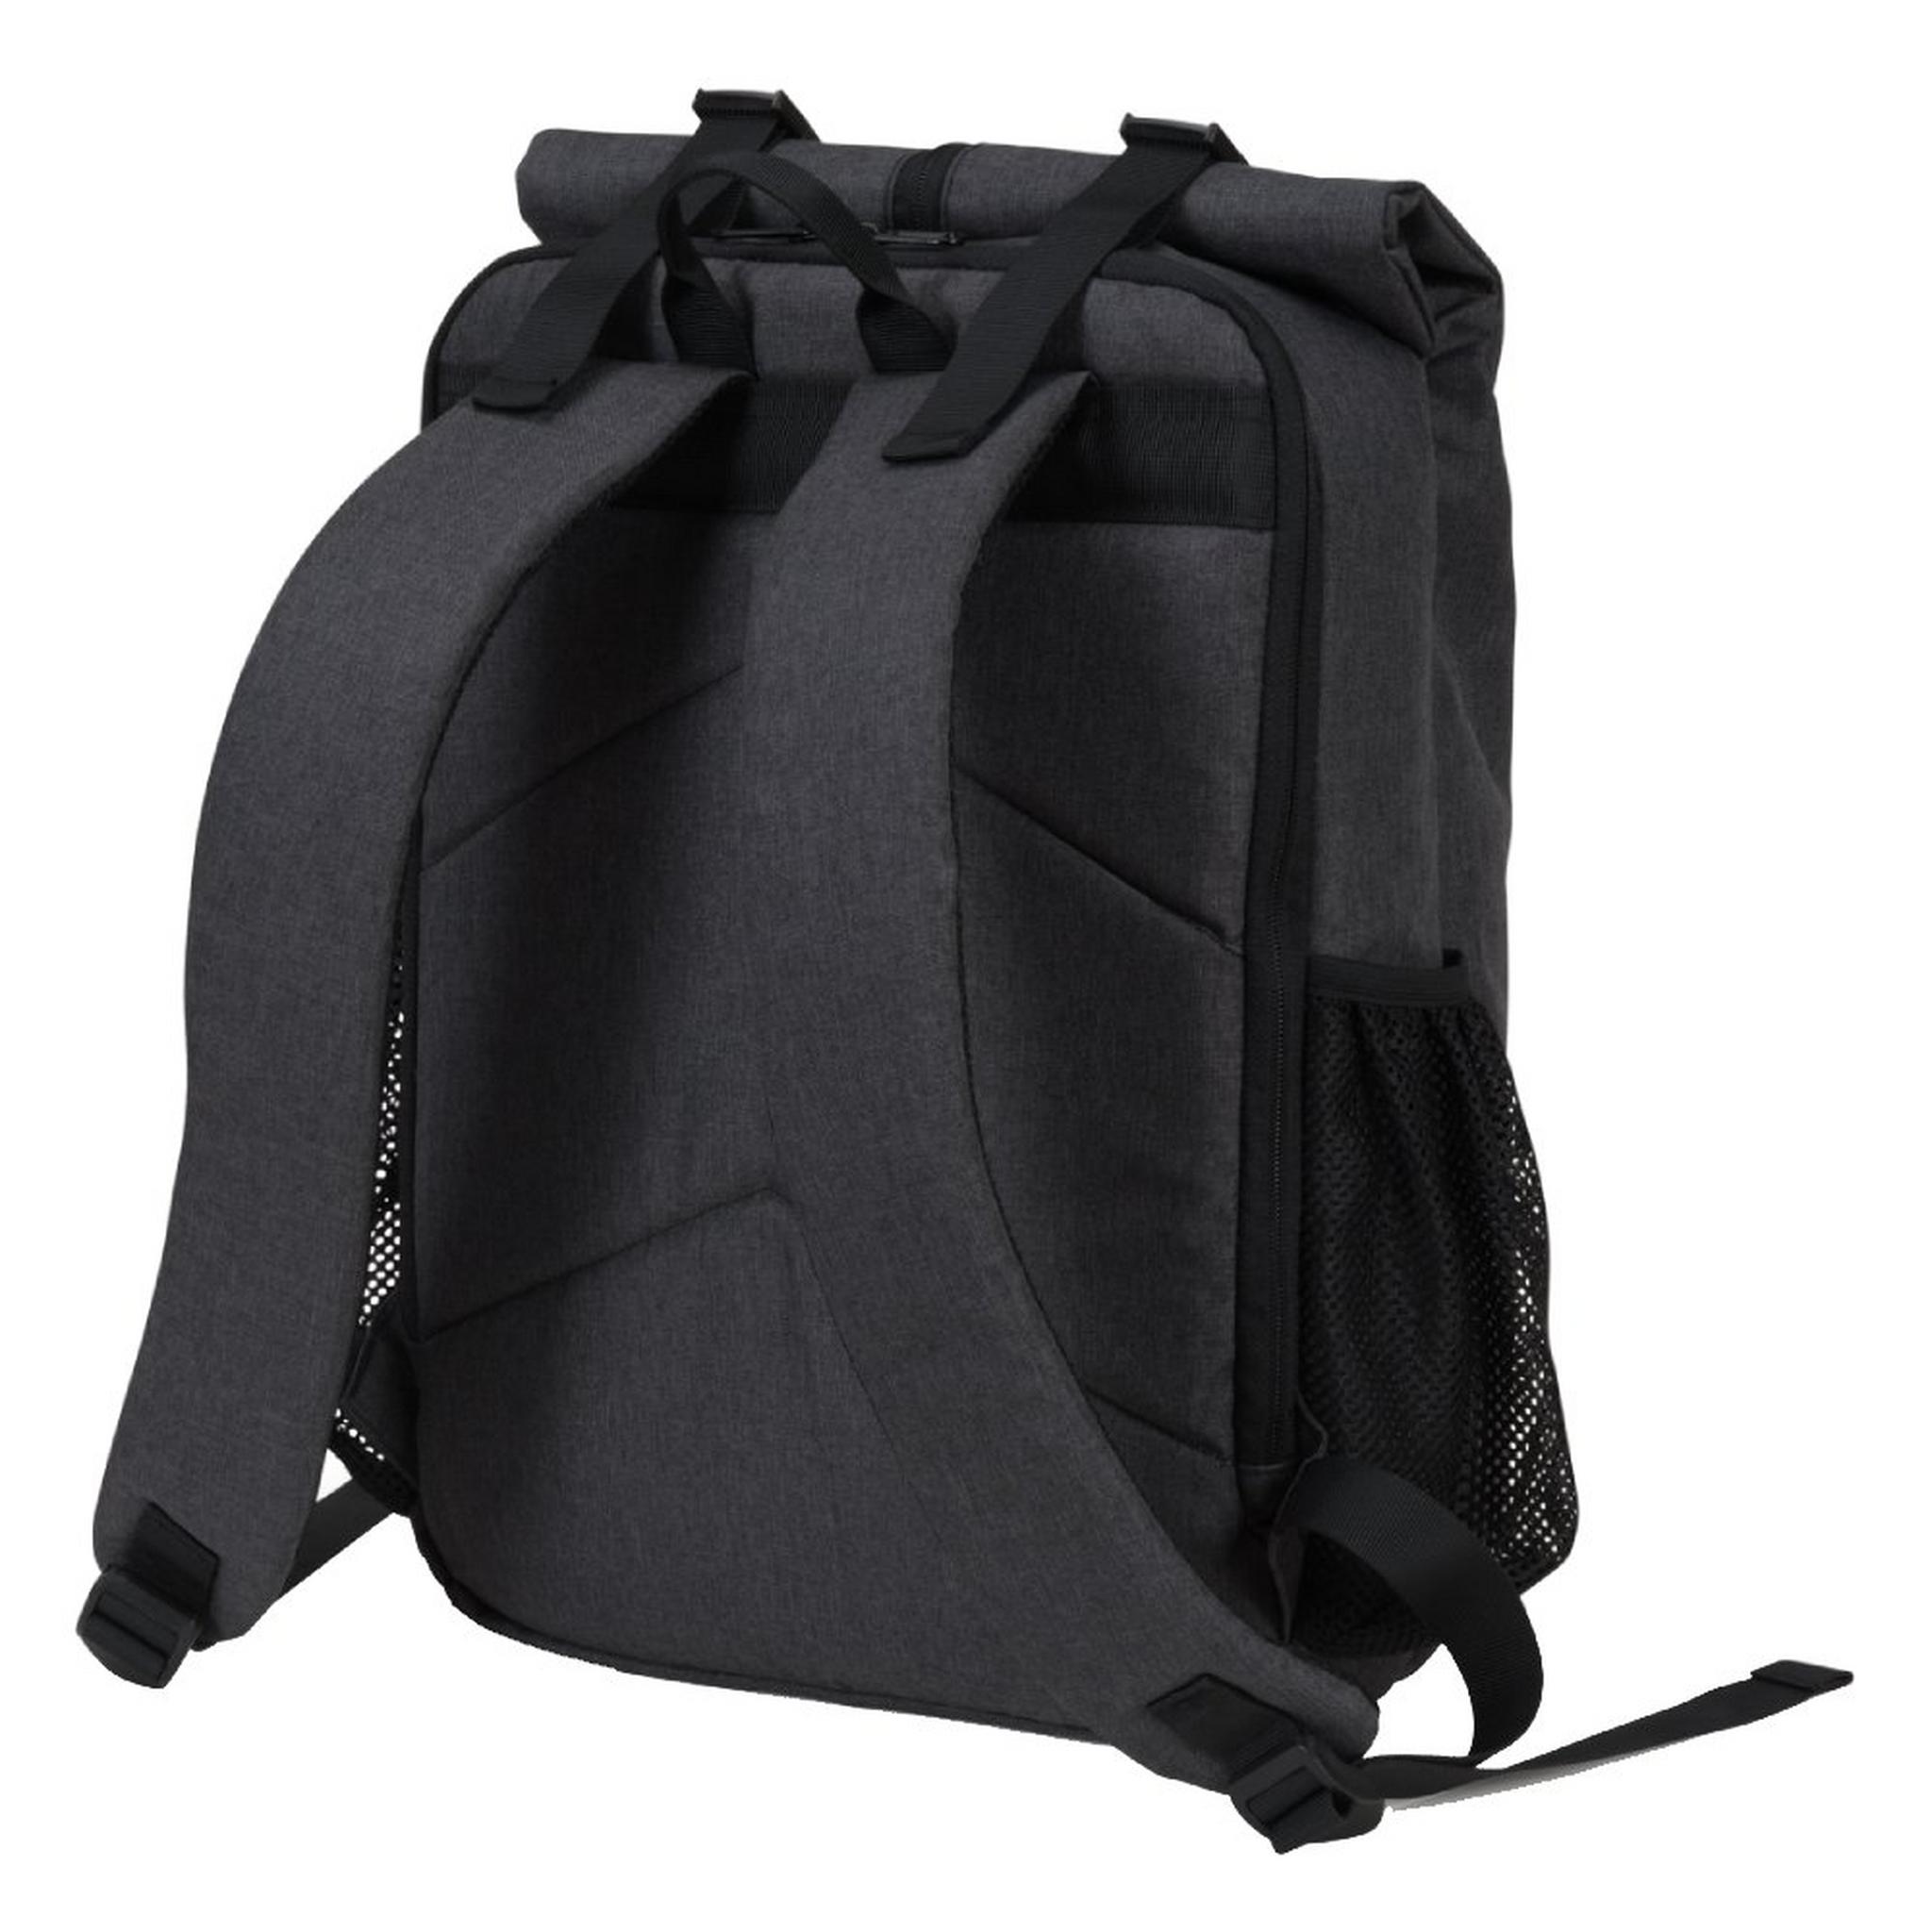 Dicota Backpack and EQ Speaker Bundle